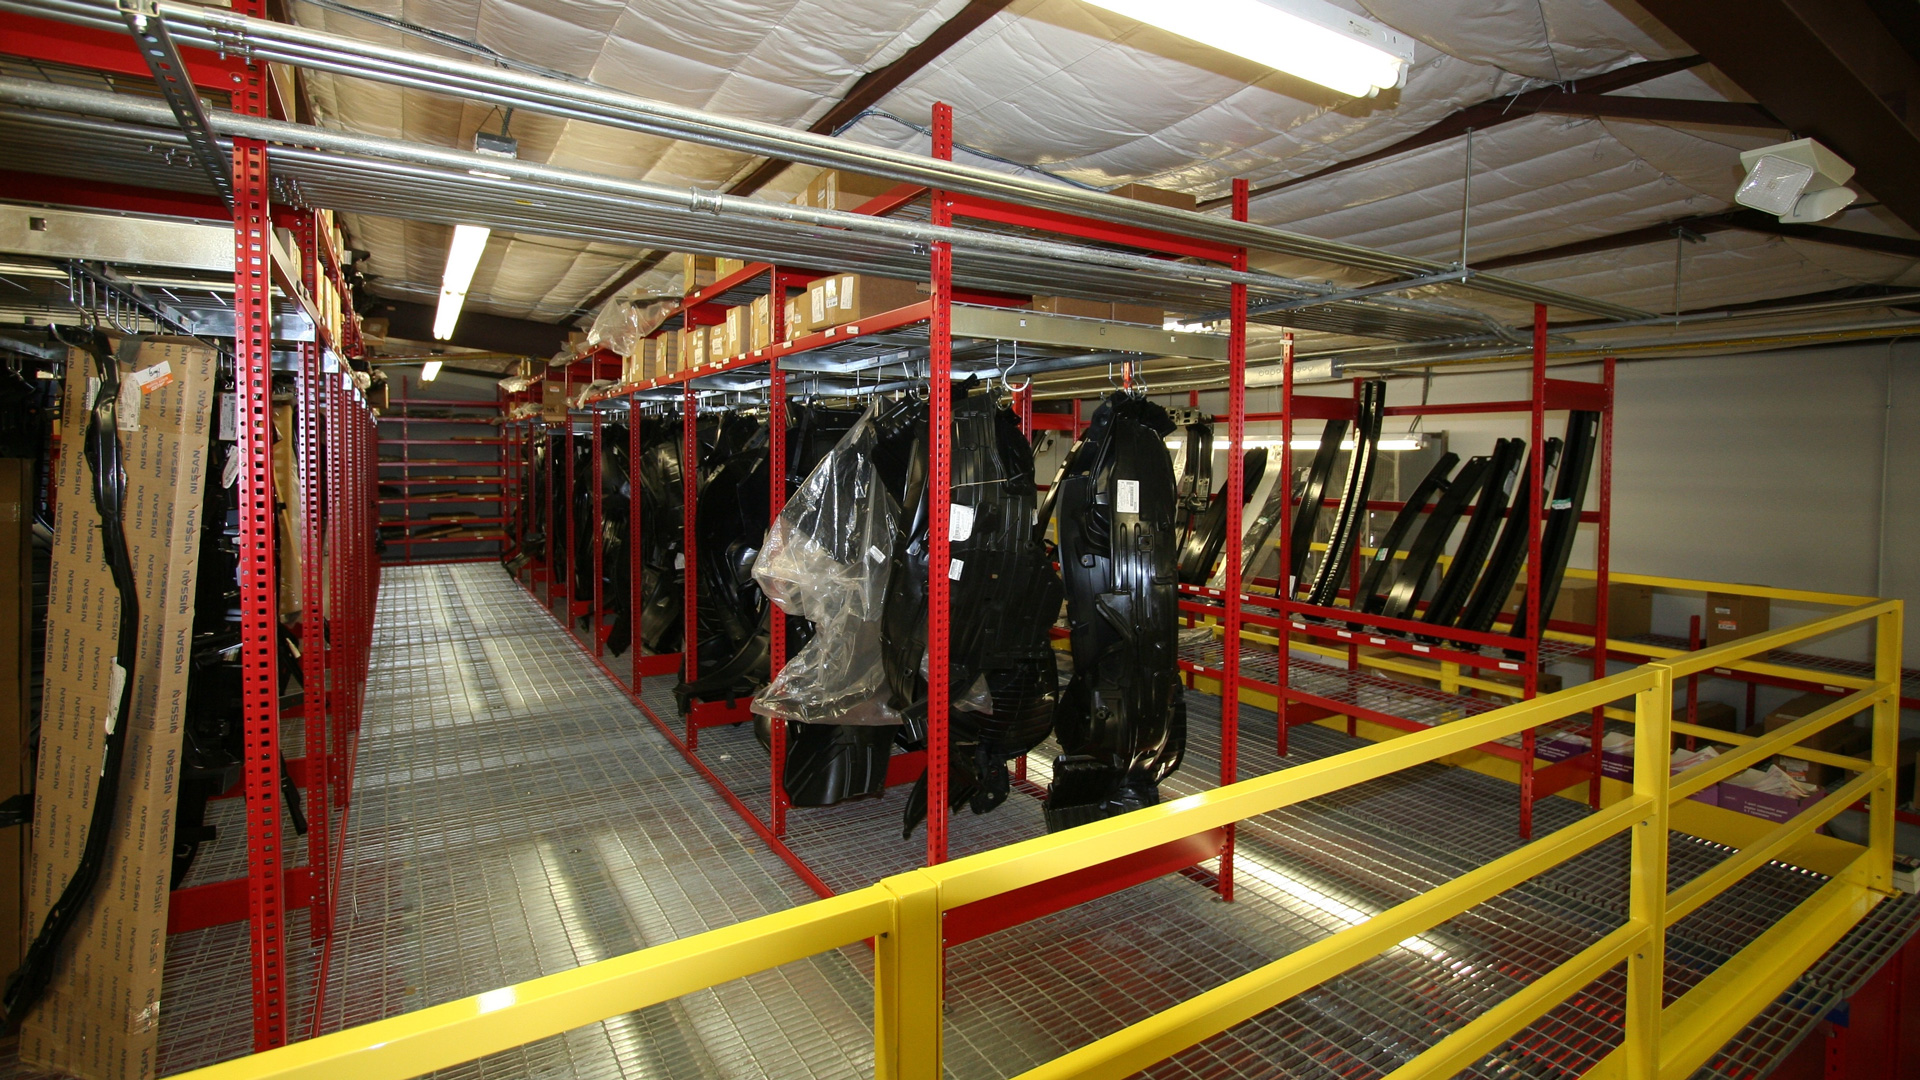 automotive specialty storage racks